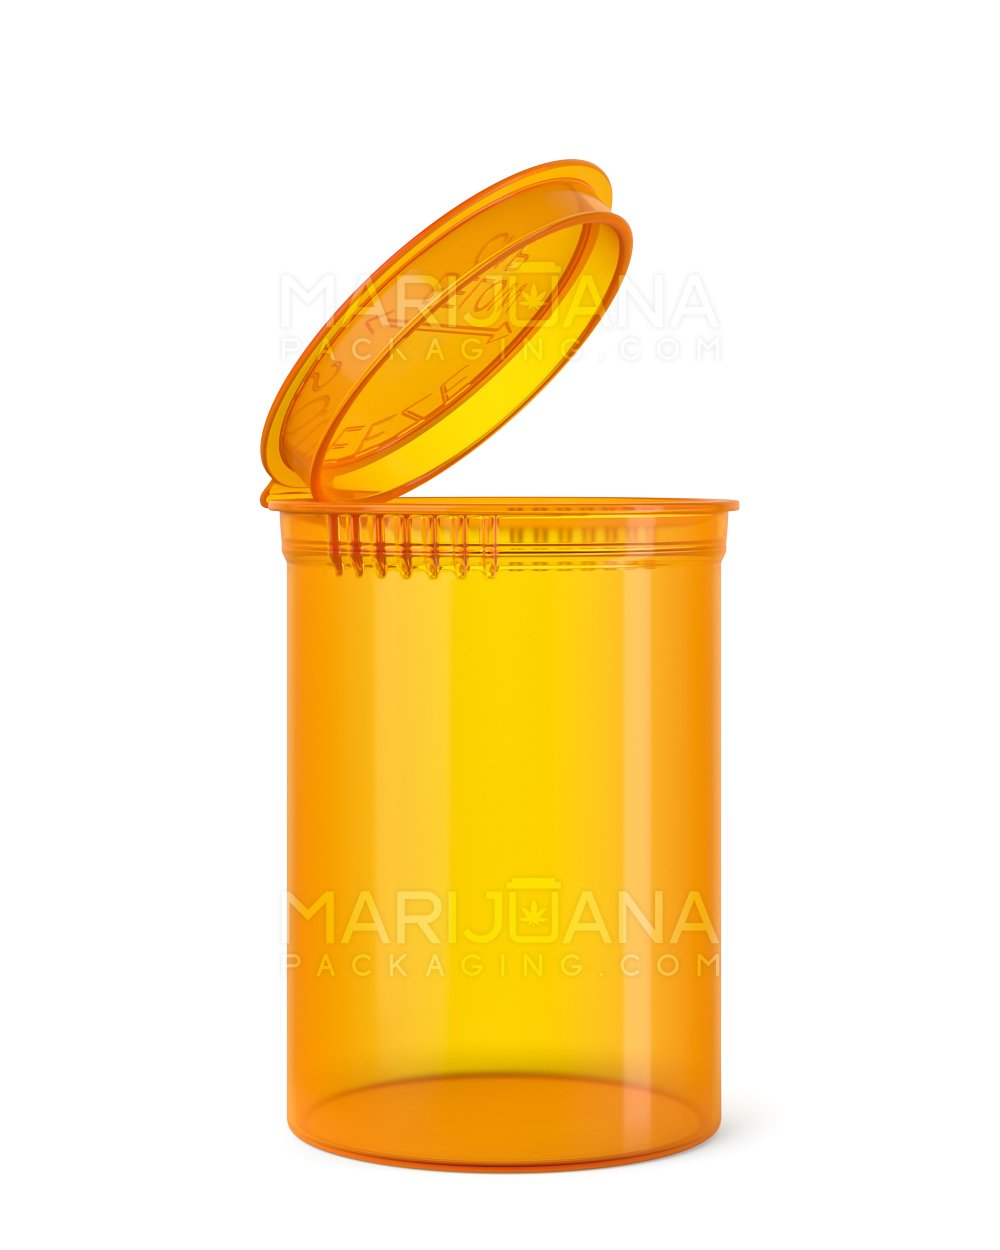 Child Resistant | Transparent Amber Pop Top Bottles | 30dr - 7g - 150 Count - 1